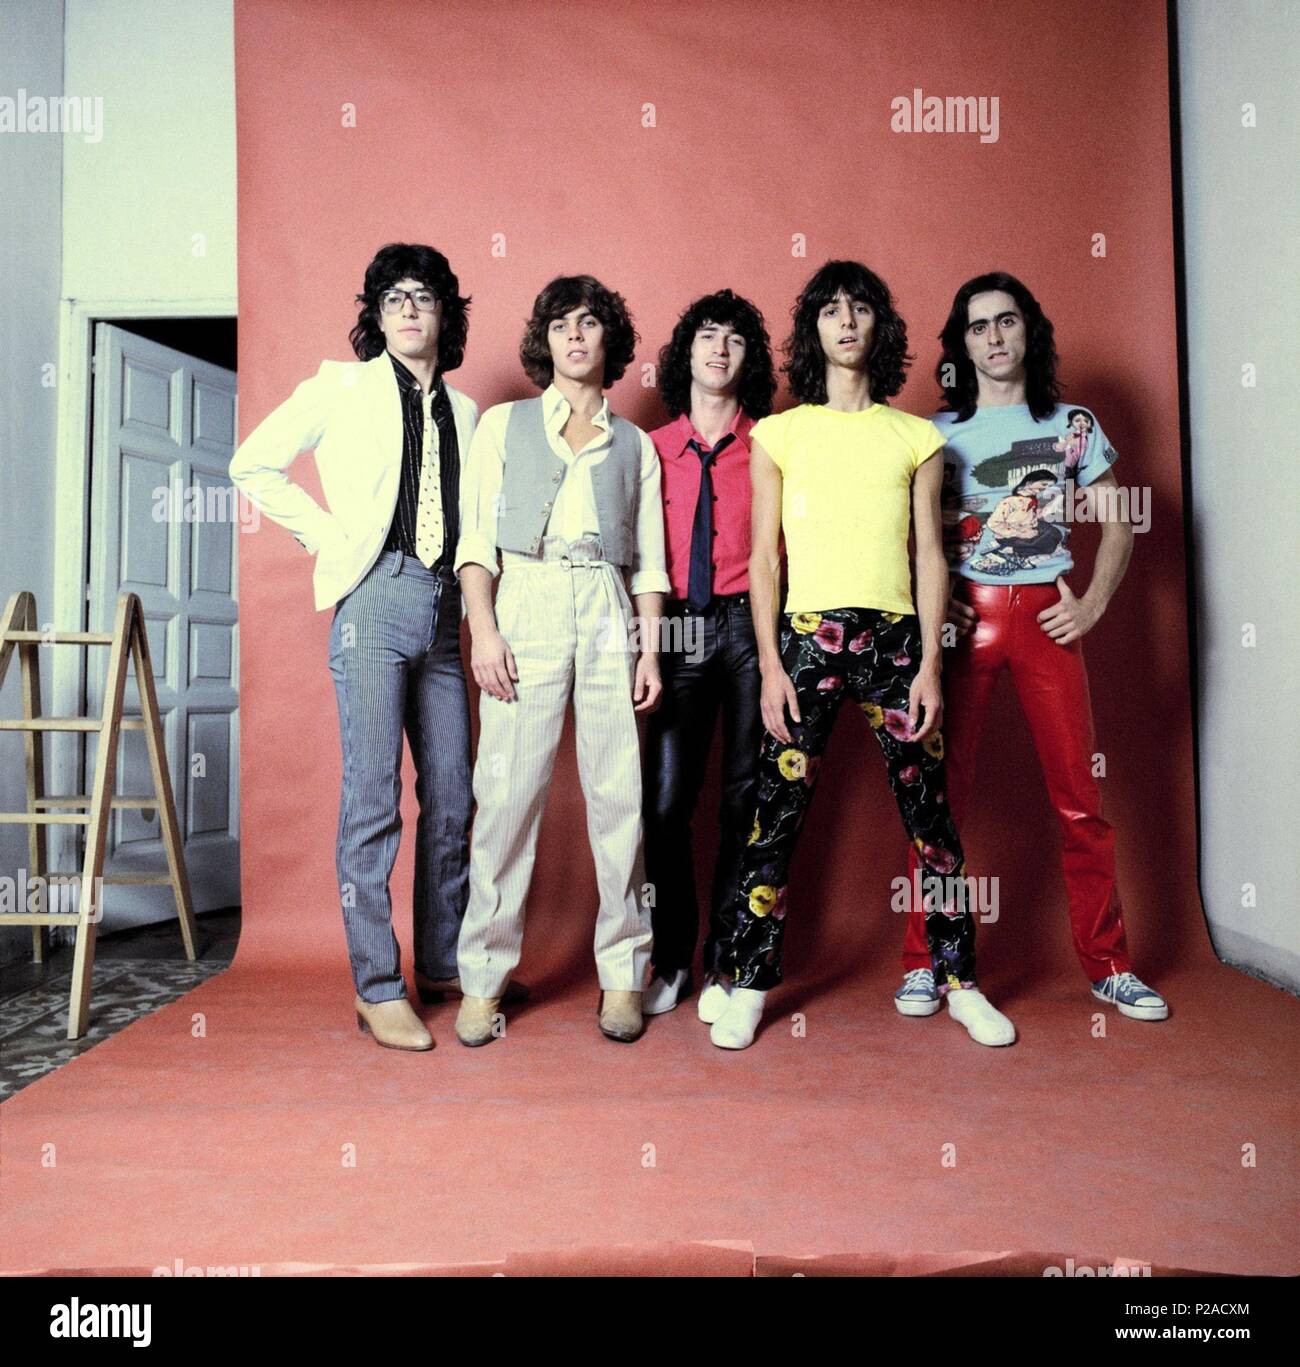 Tequila, la banda hispano-argentina de rock fundada hacia 1975 y una de las bandas más populares durante la transición. Stock Photo